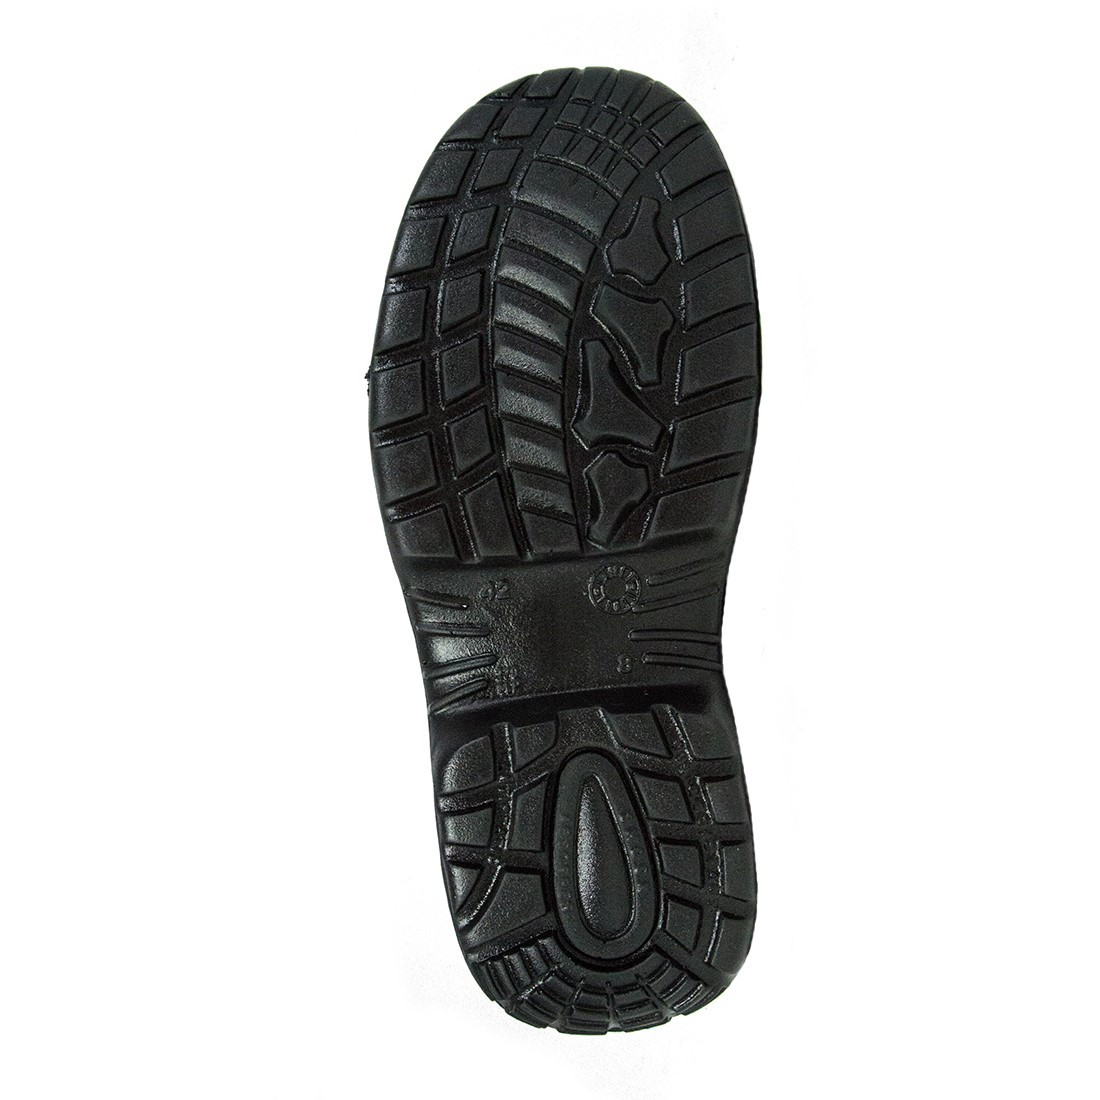 Dammtor Boot S1P SRC - Les chaussures de protection